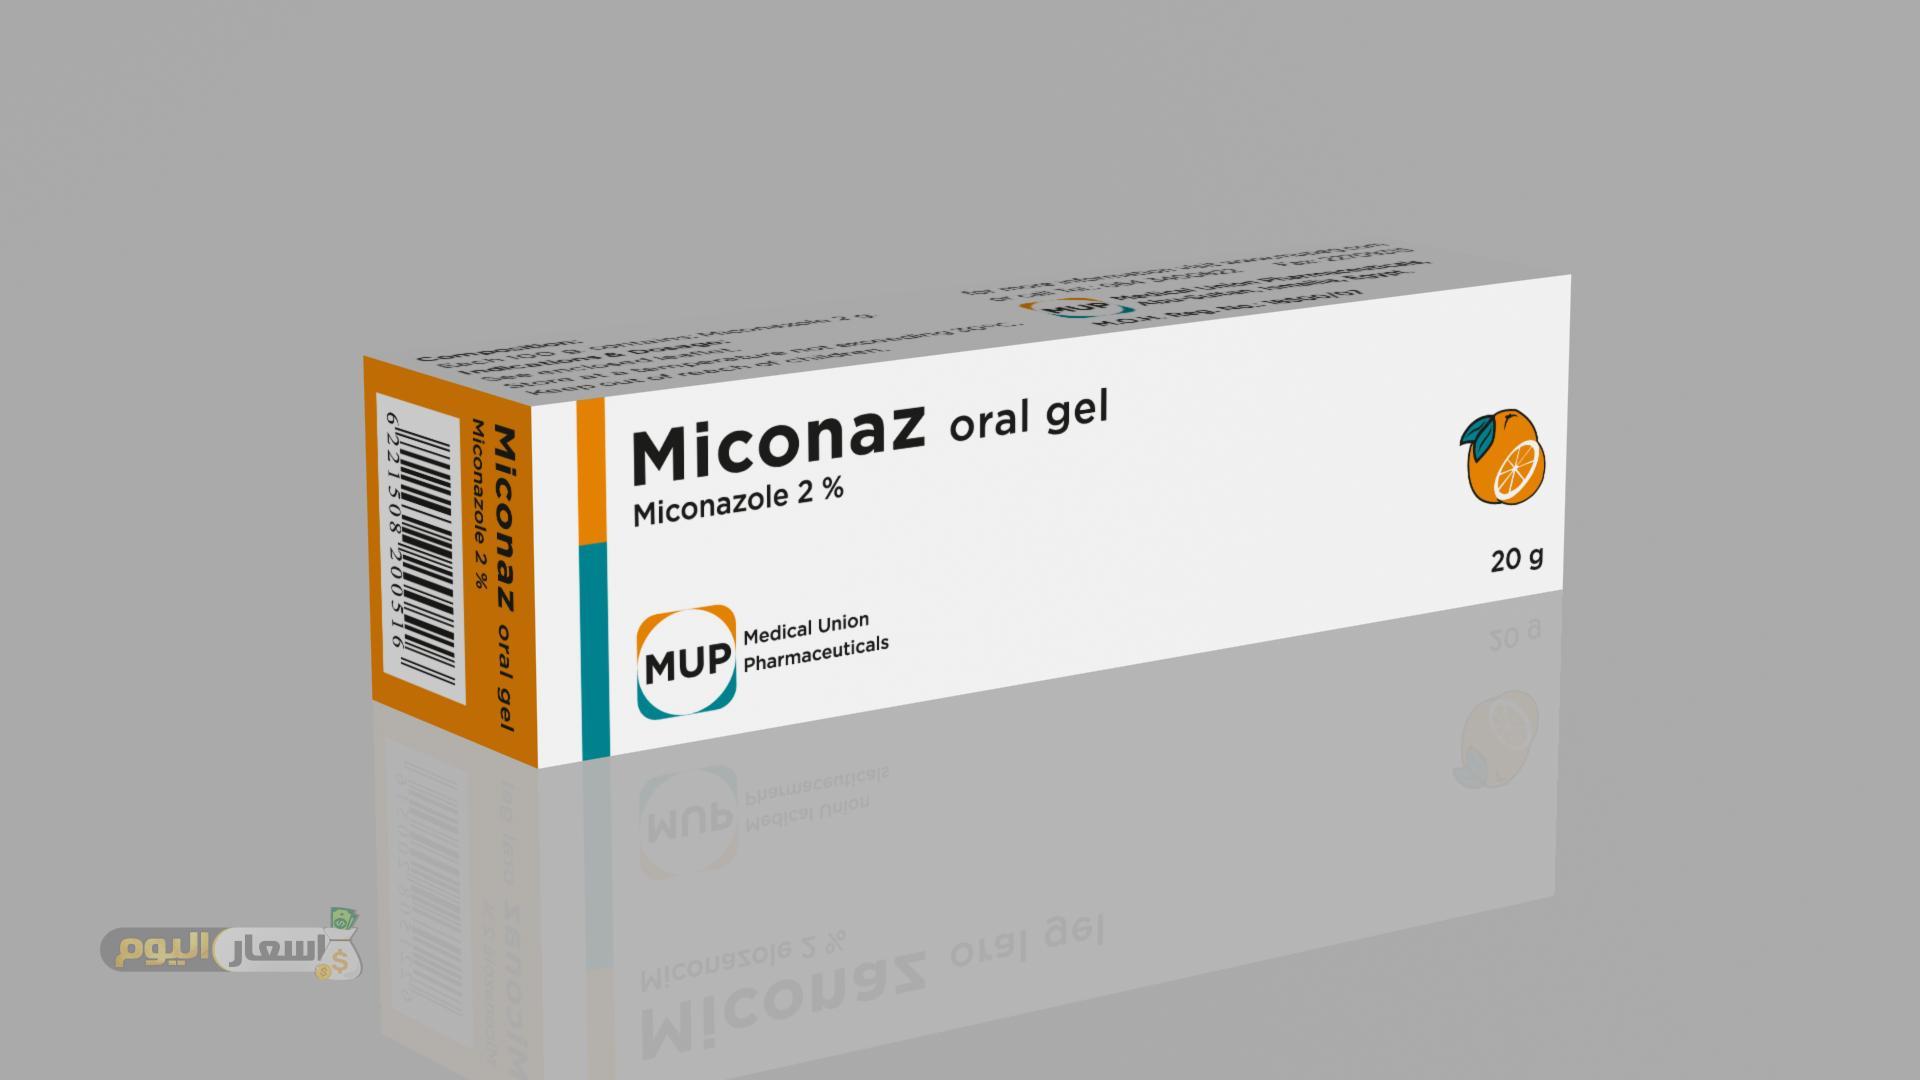 سعر دواء ميكوناز جيل miconaz gel